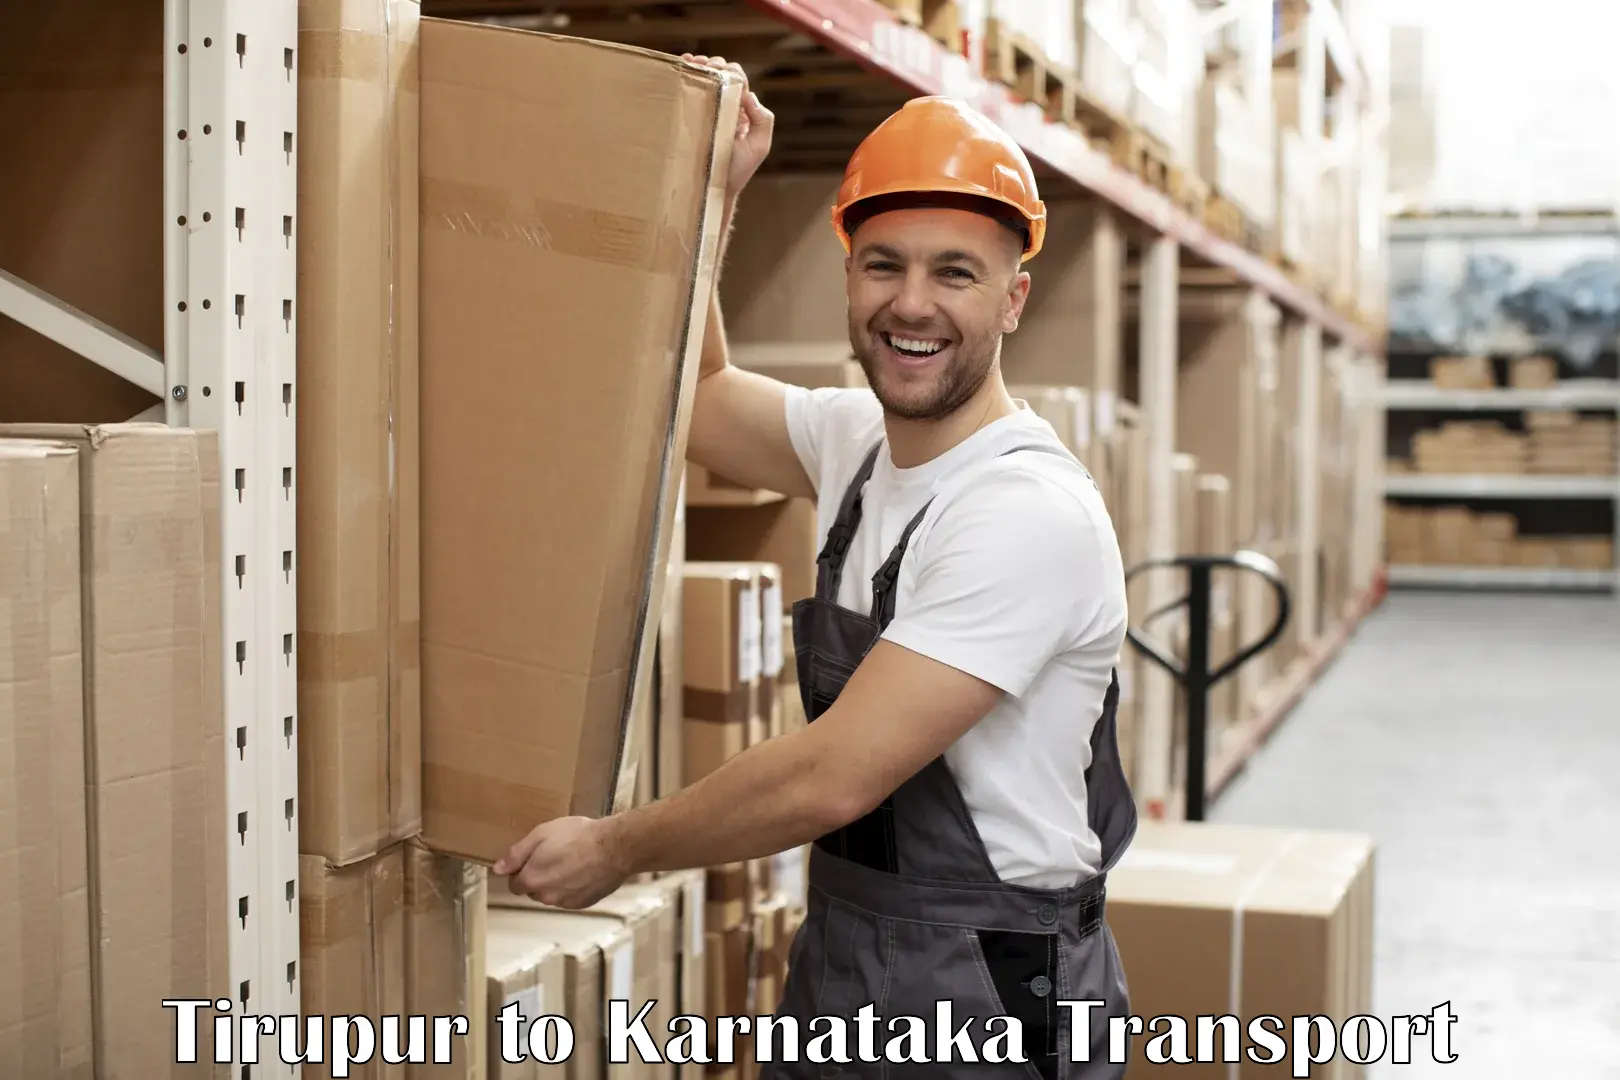 Road transport services in Tirupur to Munavalli